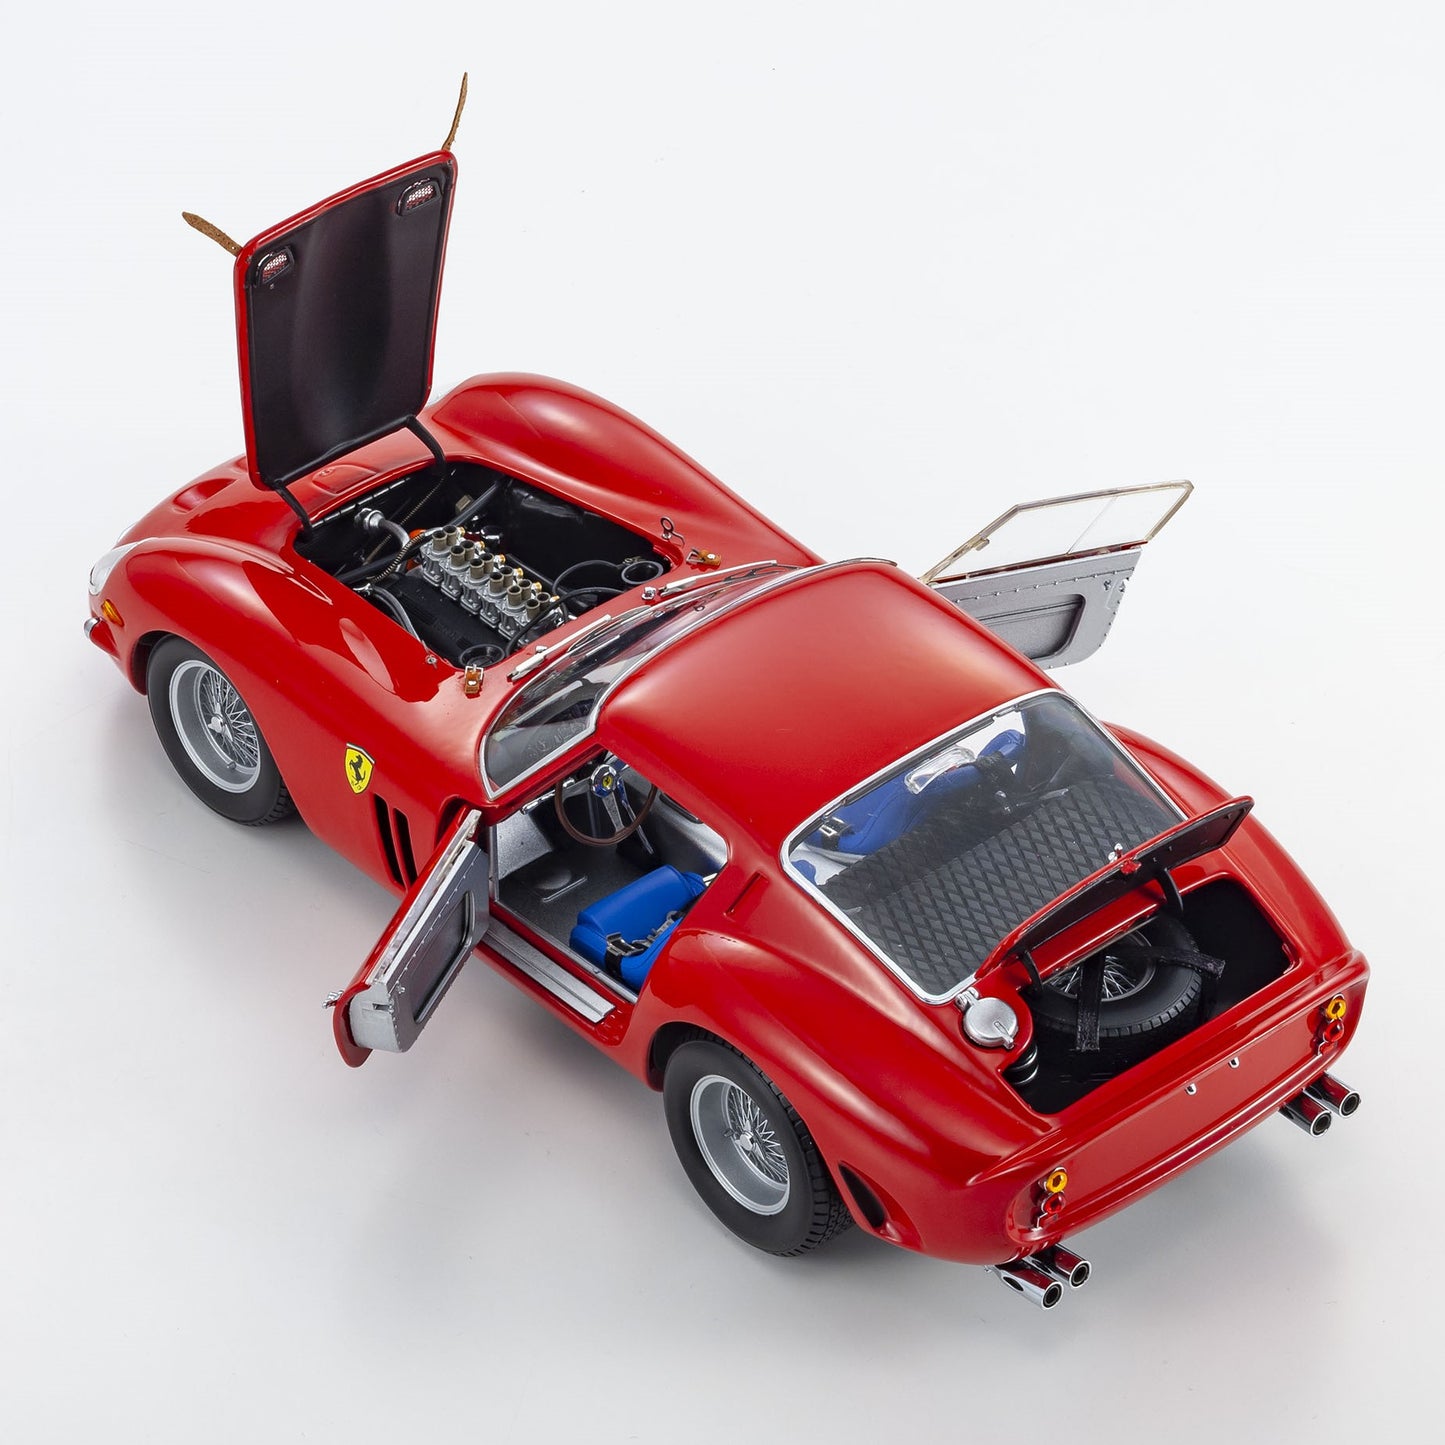 Kyosho - Ferrari 250 GTO Street (Rosso Corsa Red) 1:18 Scale Model Car